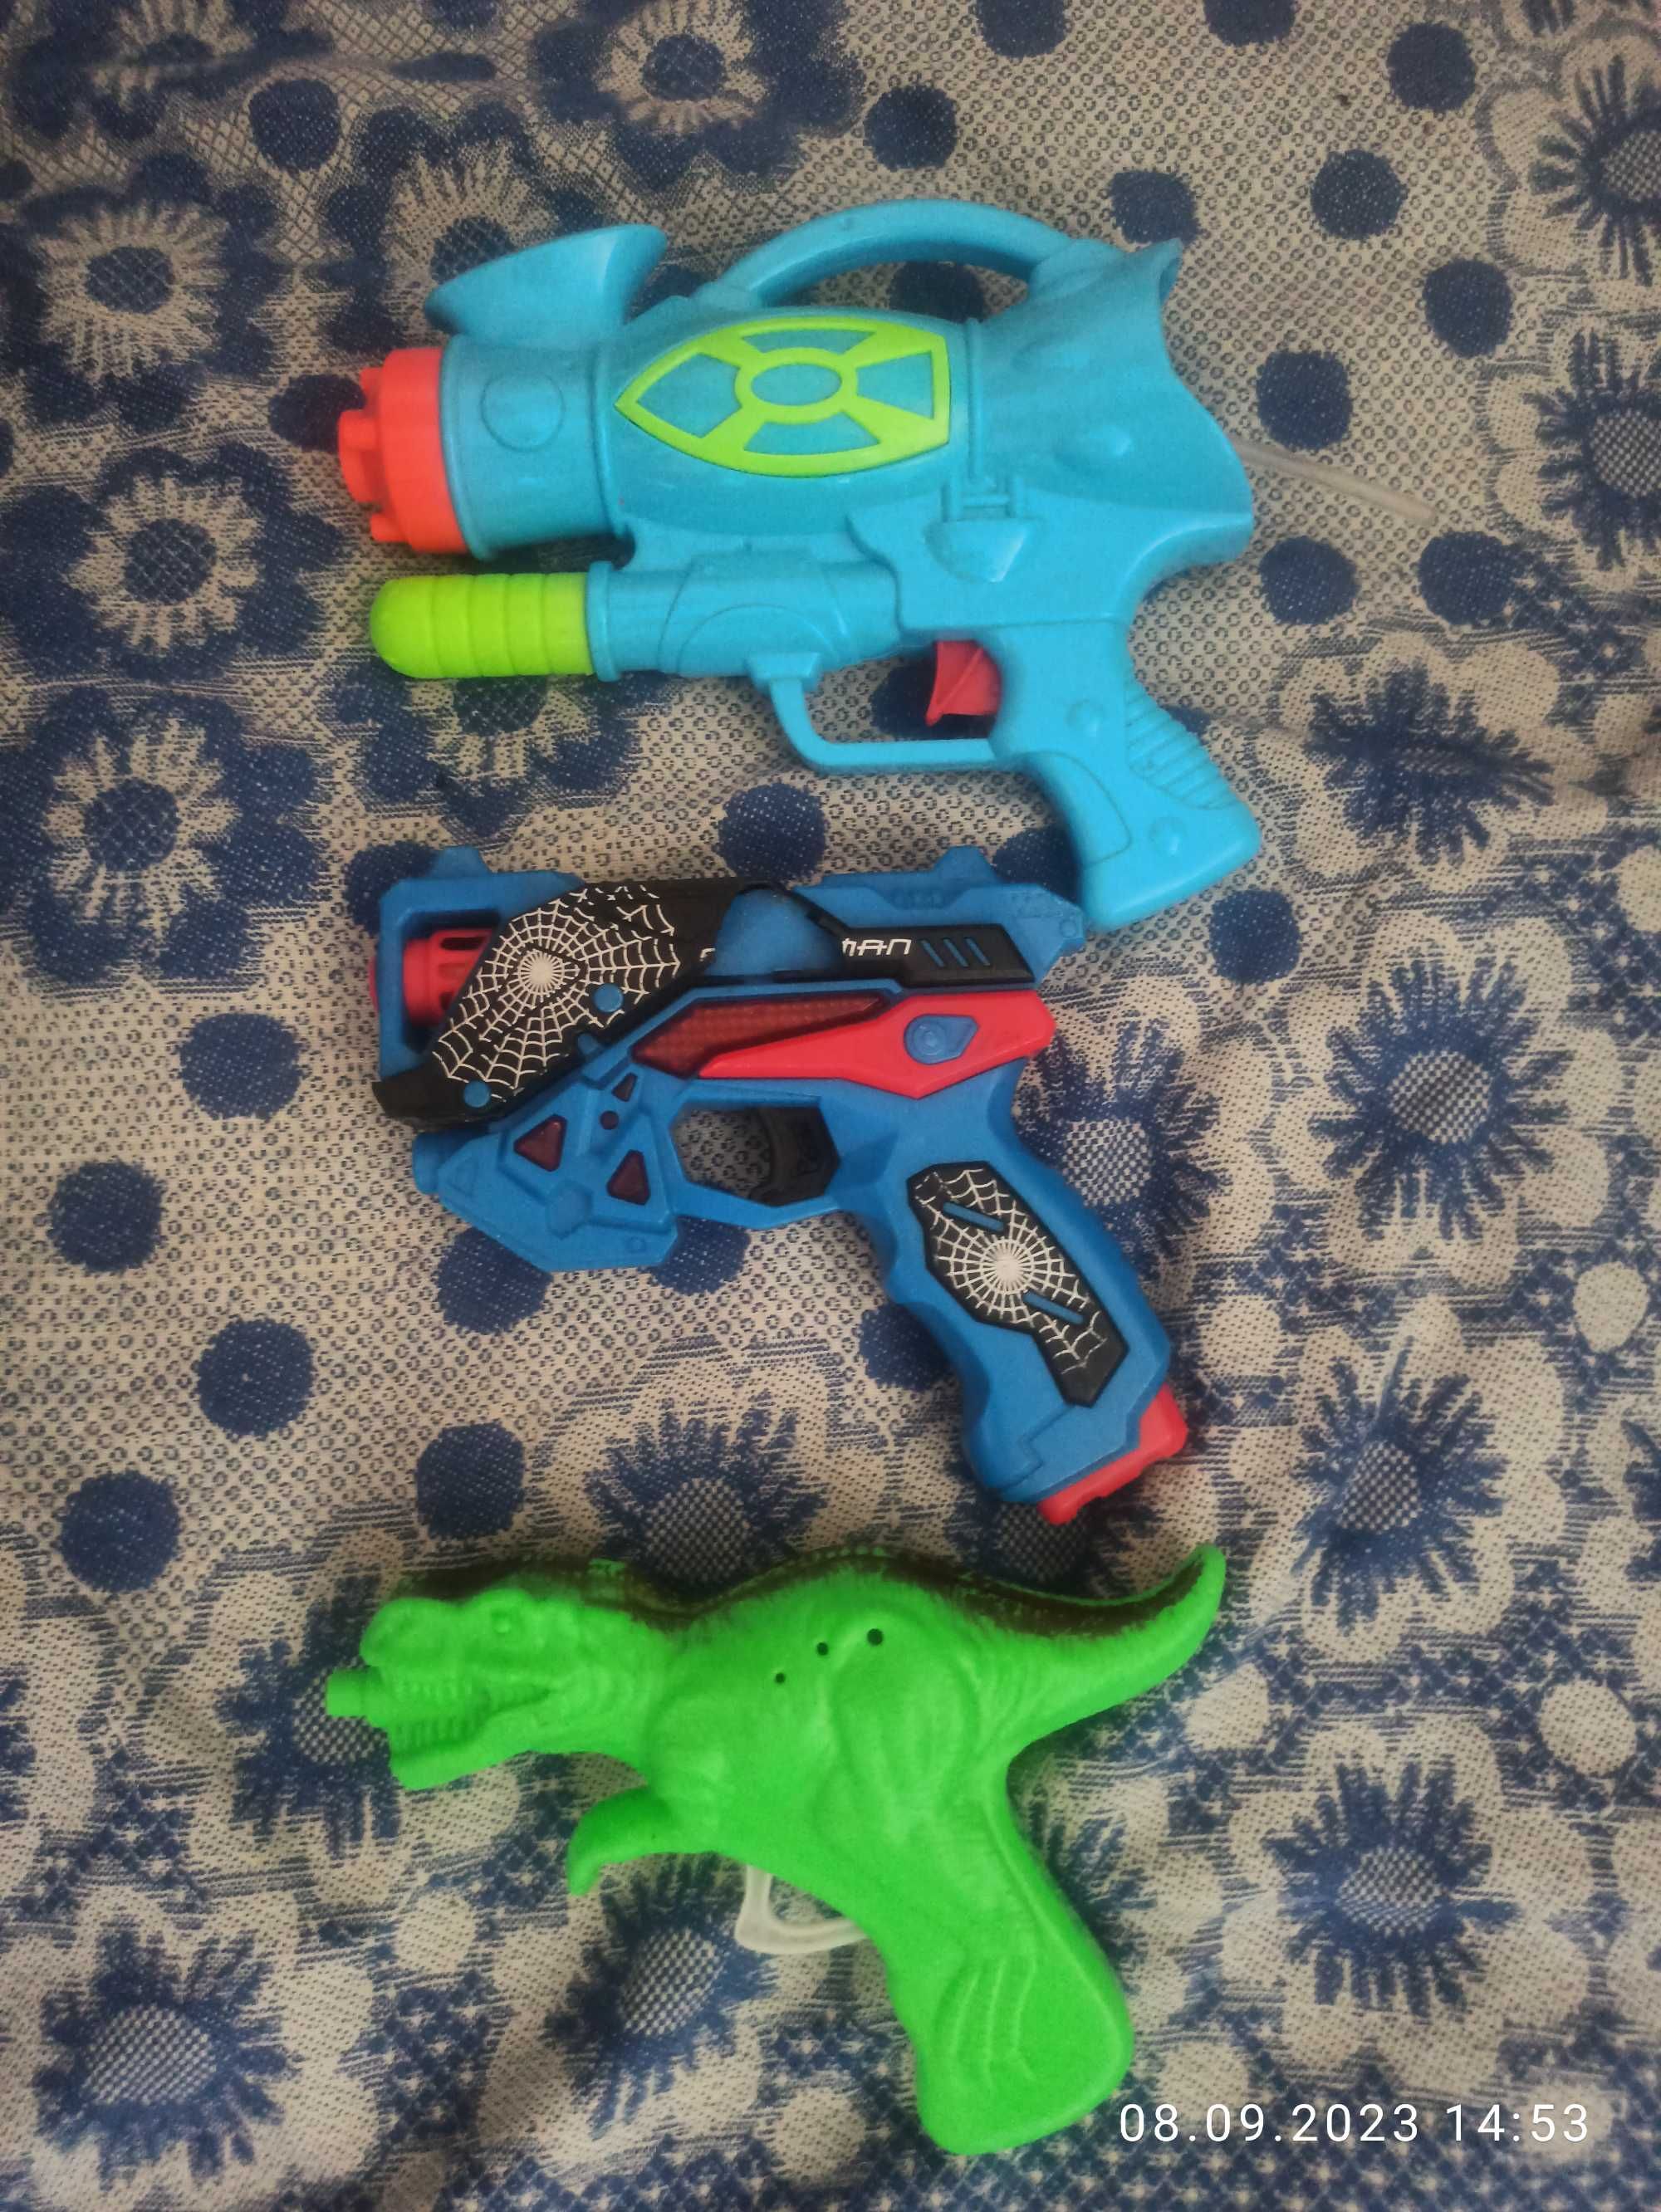 продам игрушки пистолеты, ружье, водяной пистолет